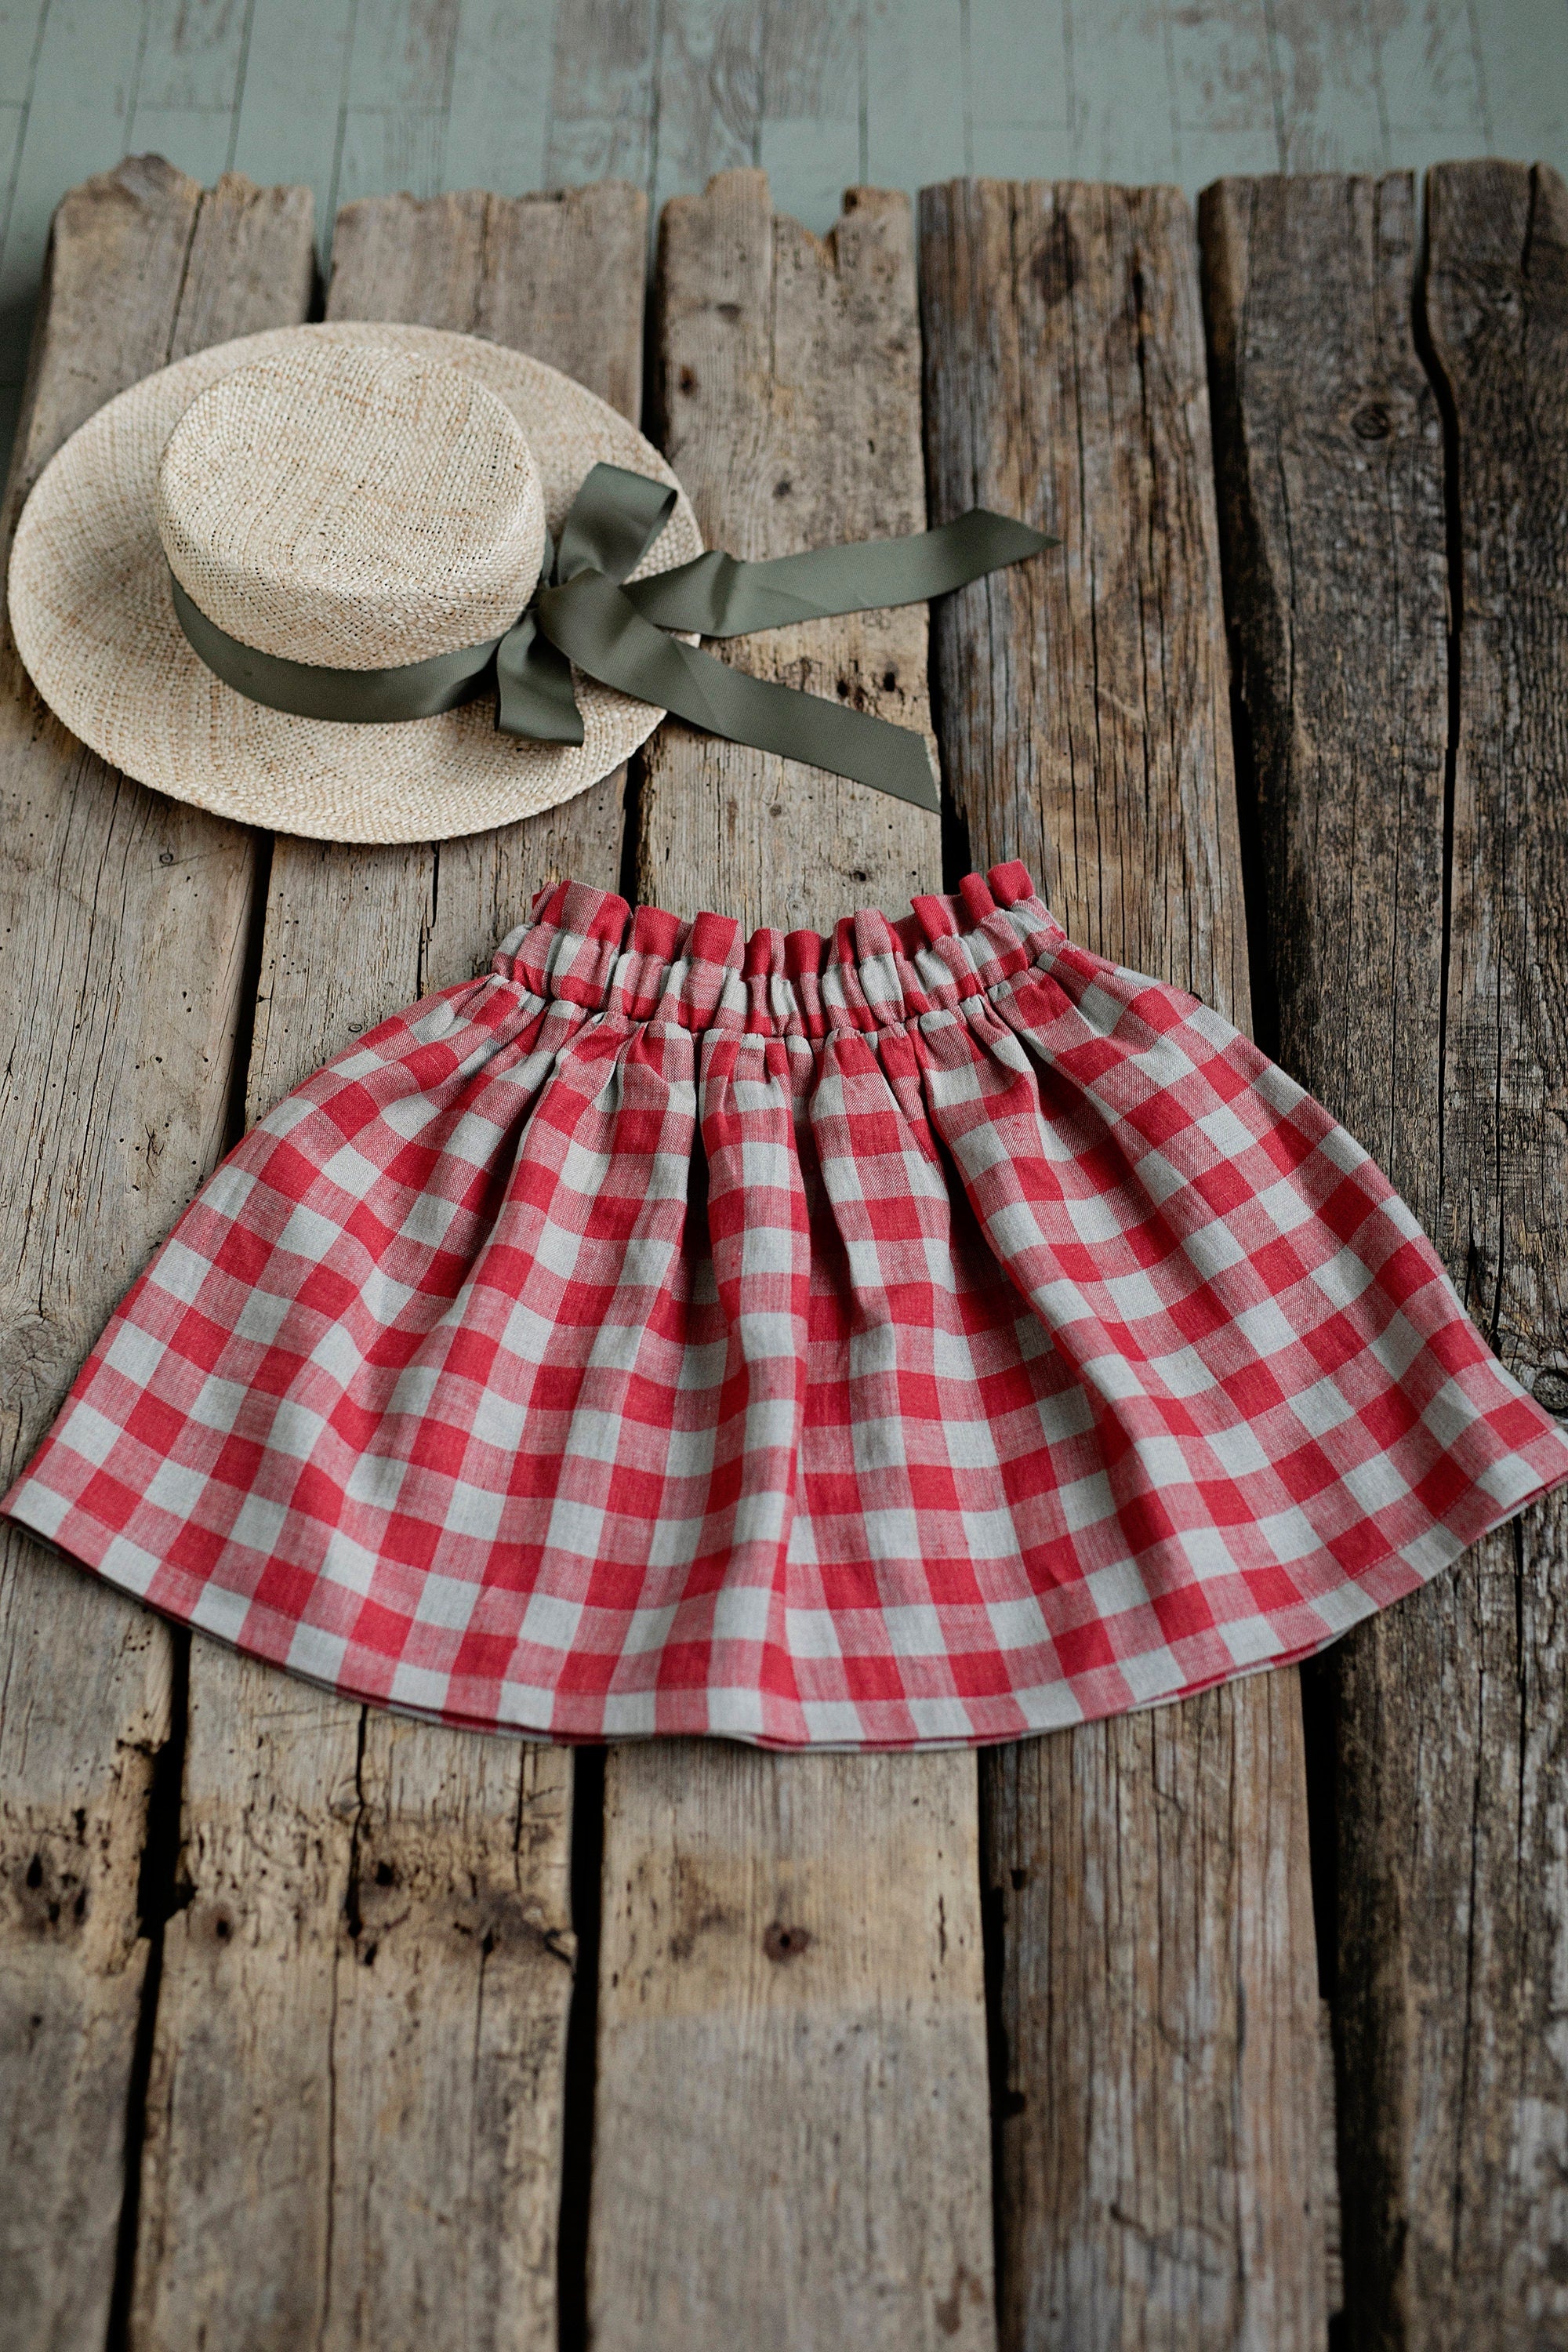 Garden Festive Midi  Linen Skirt